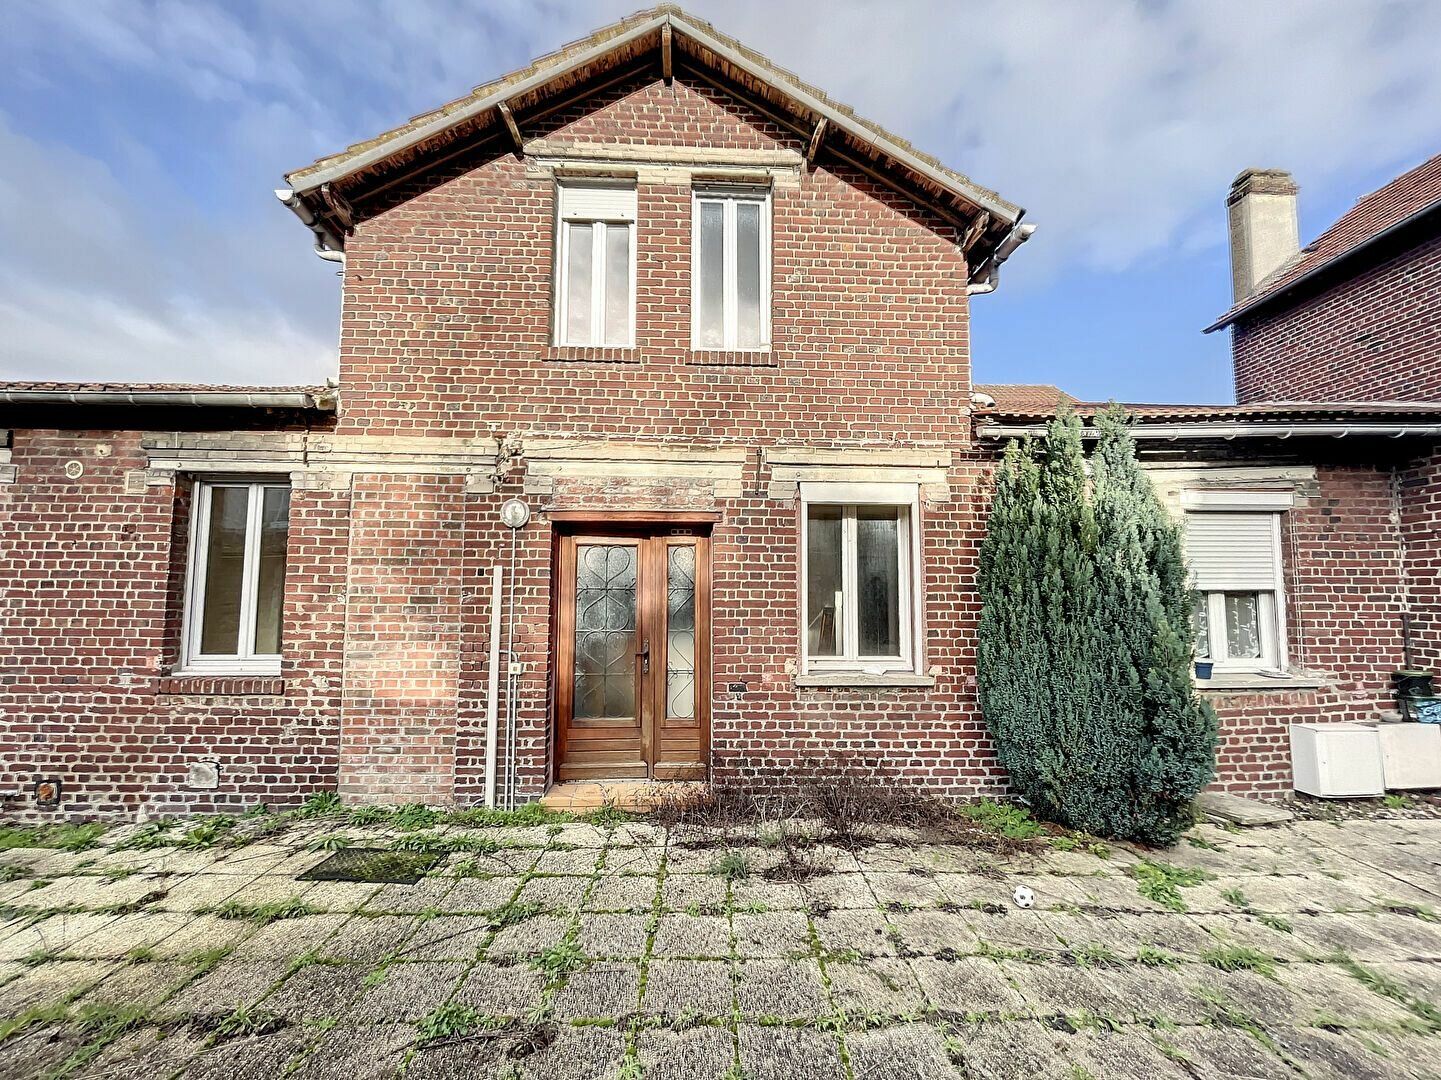 Maison à vendre 2 30.56m2 à Margny-lès-Compiègne vignette-6